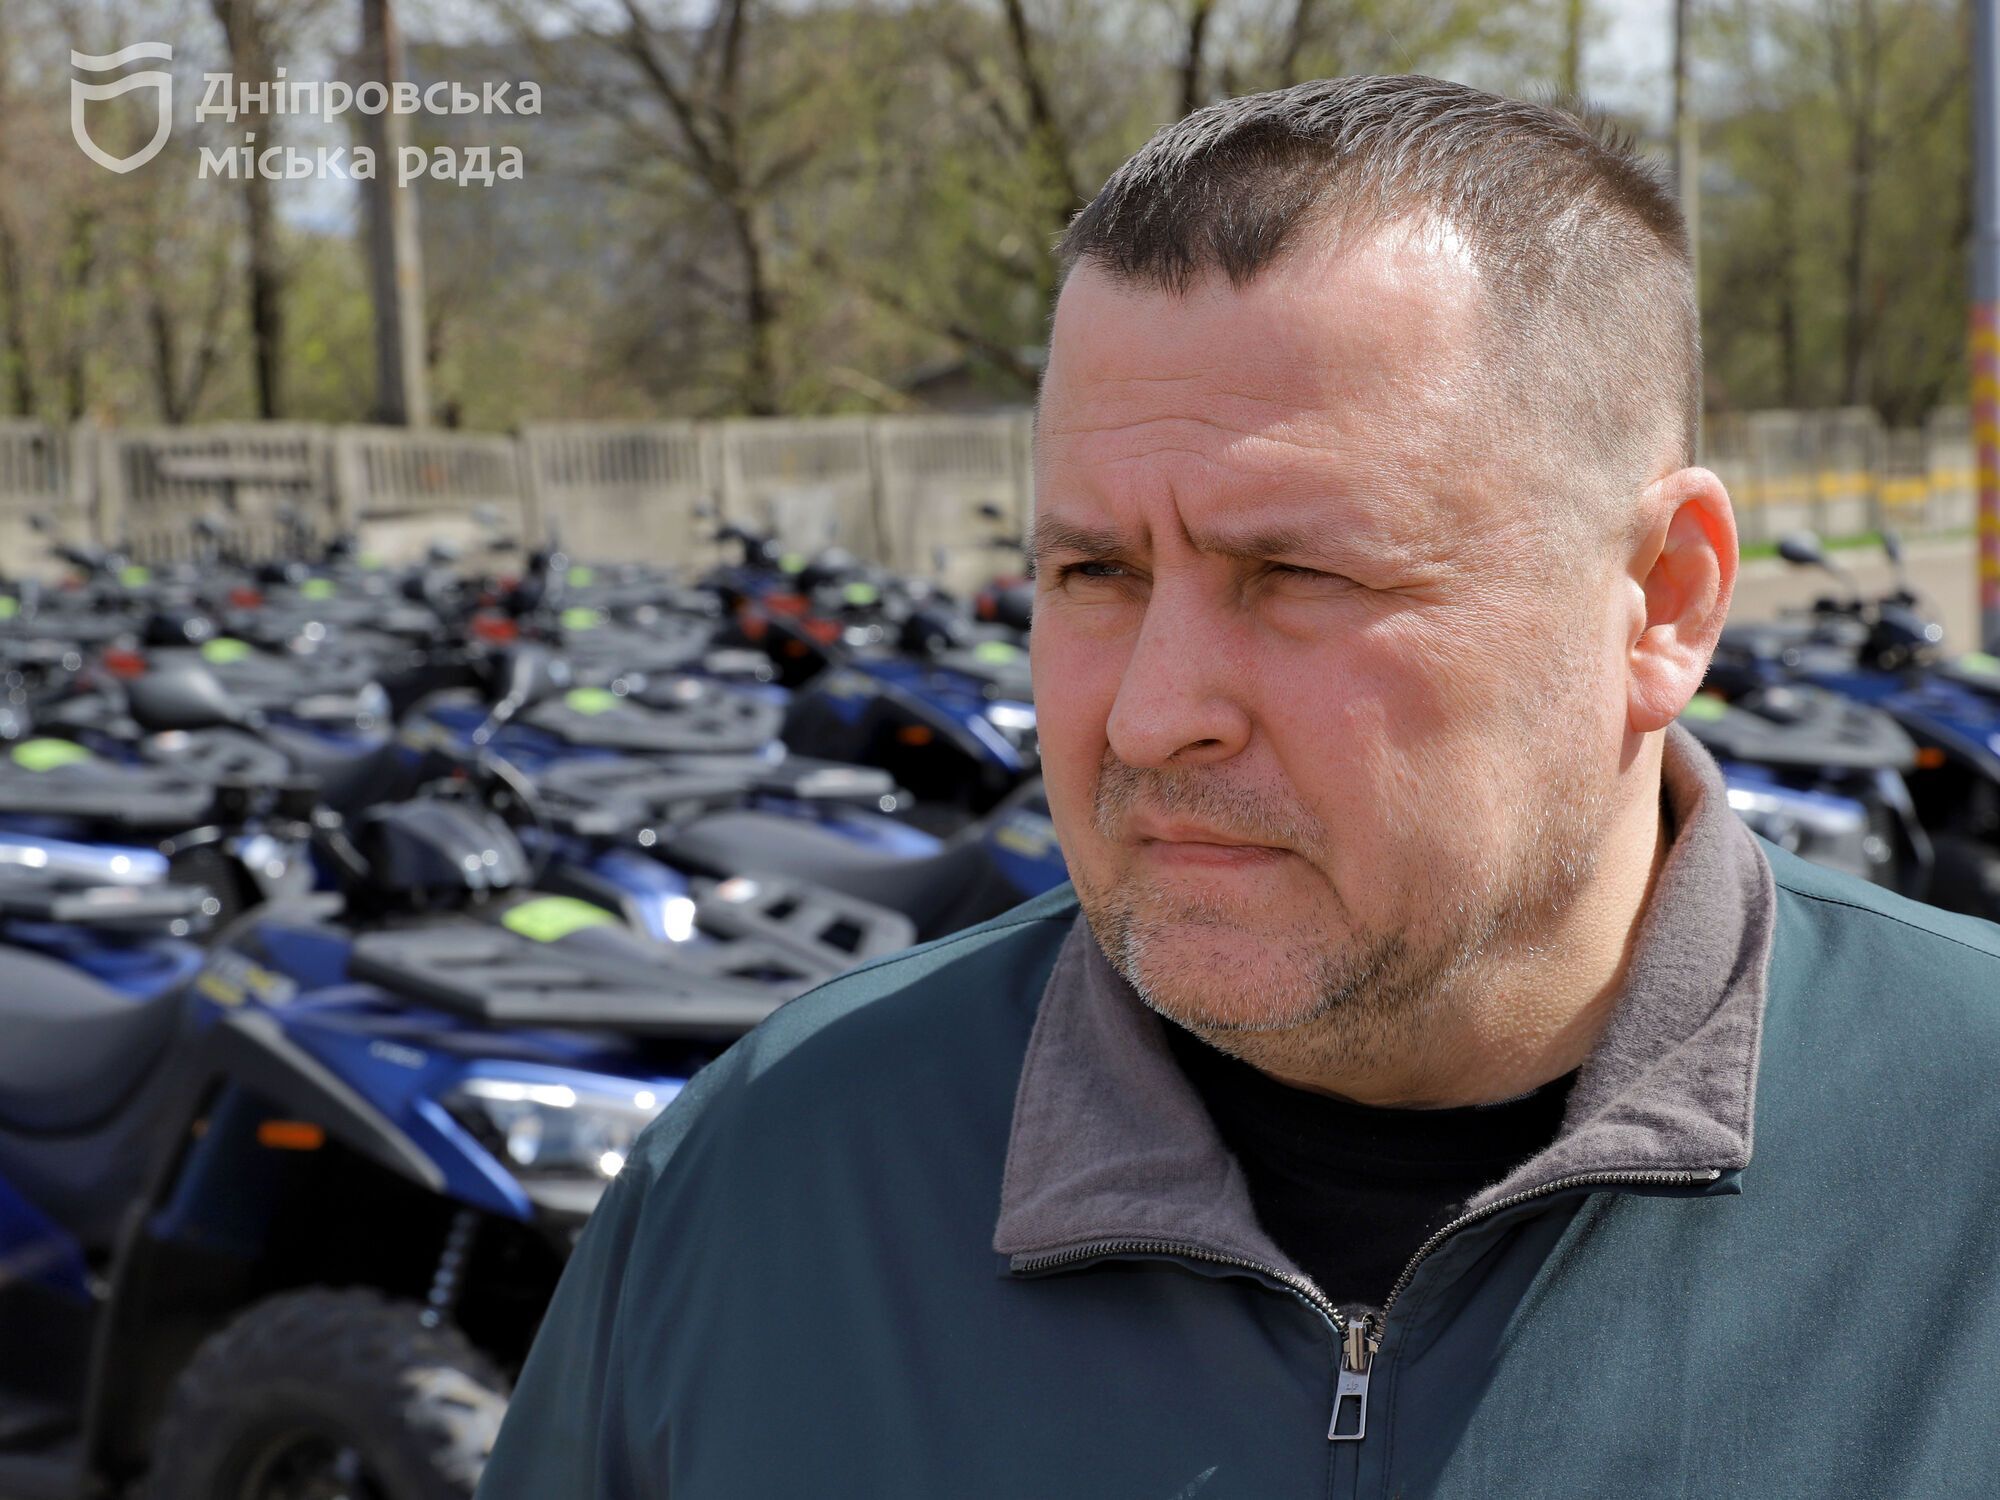 Дніпро вже надав Силам оборони сотню нових квадроциклів та планує придбати ще стільки ж найближчим часом, – Філатов
